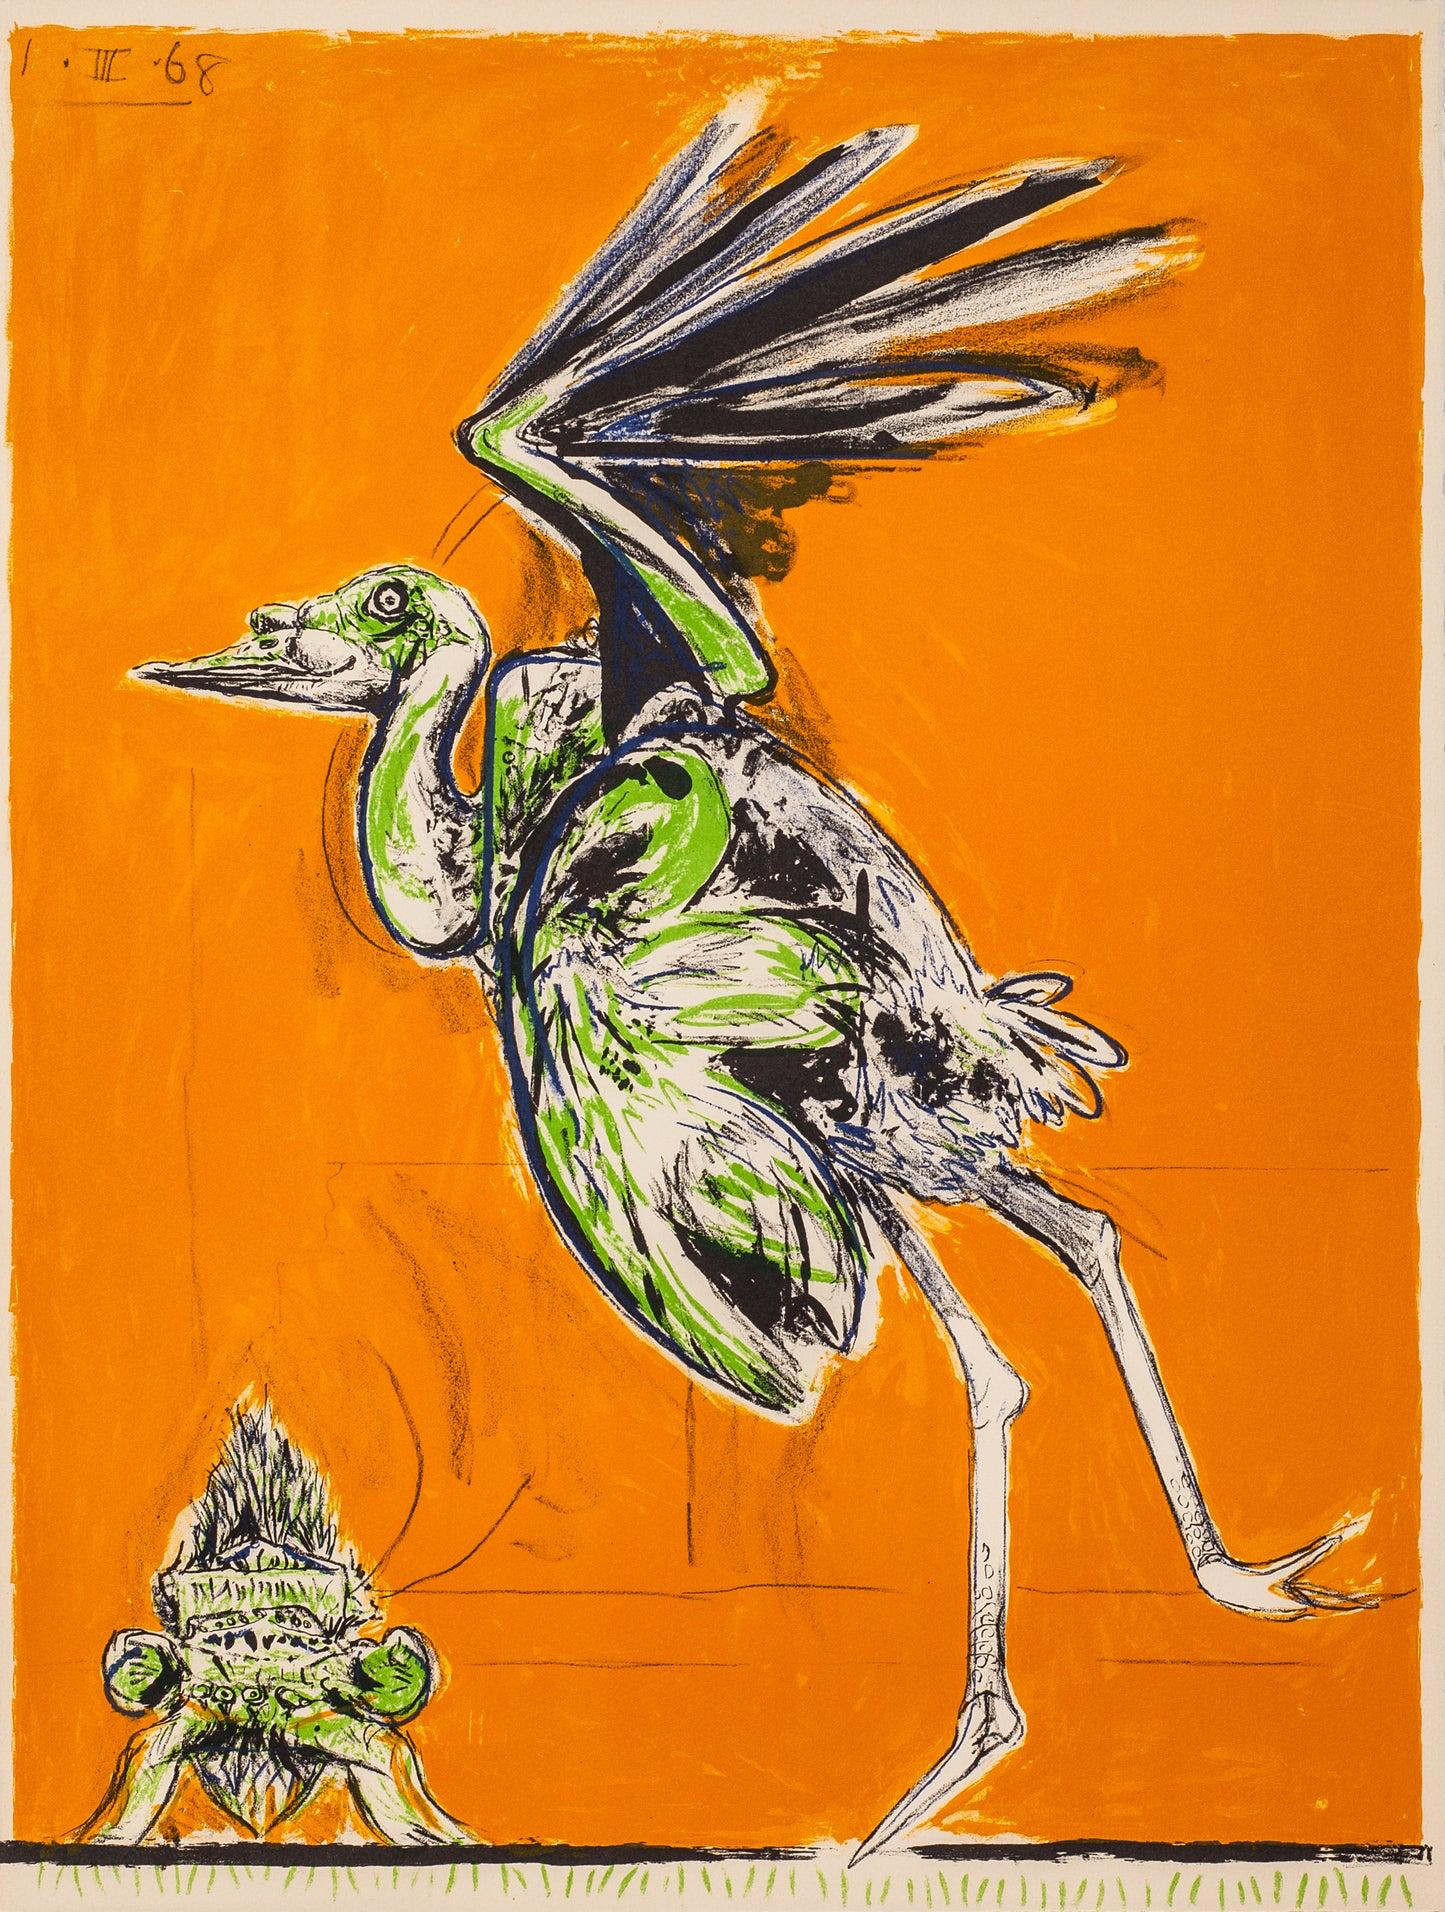 Artiste : Graham Sutherland 

Médium : Lithographie originale, tirée du portfolio Un bestiaire et quelques correspondances, 1968

Dimensions : 26 x 20 in, 66 x 50.8 cm